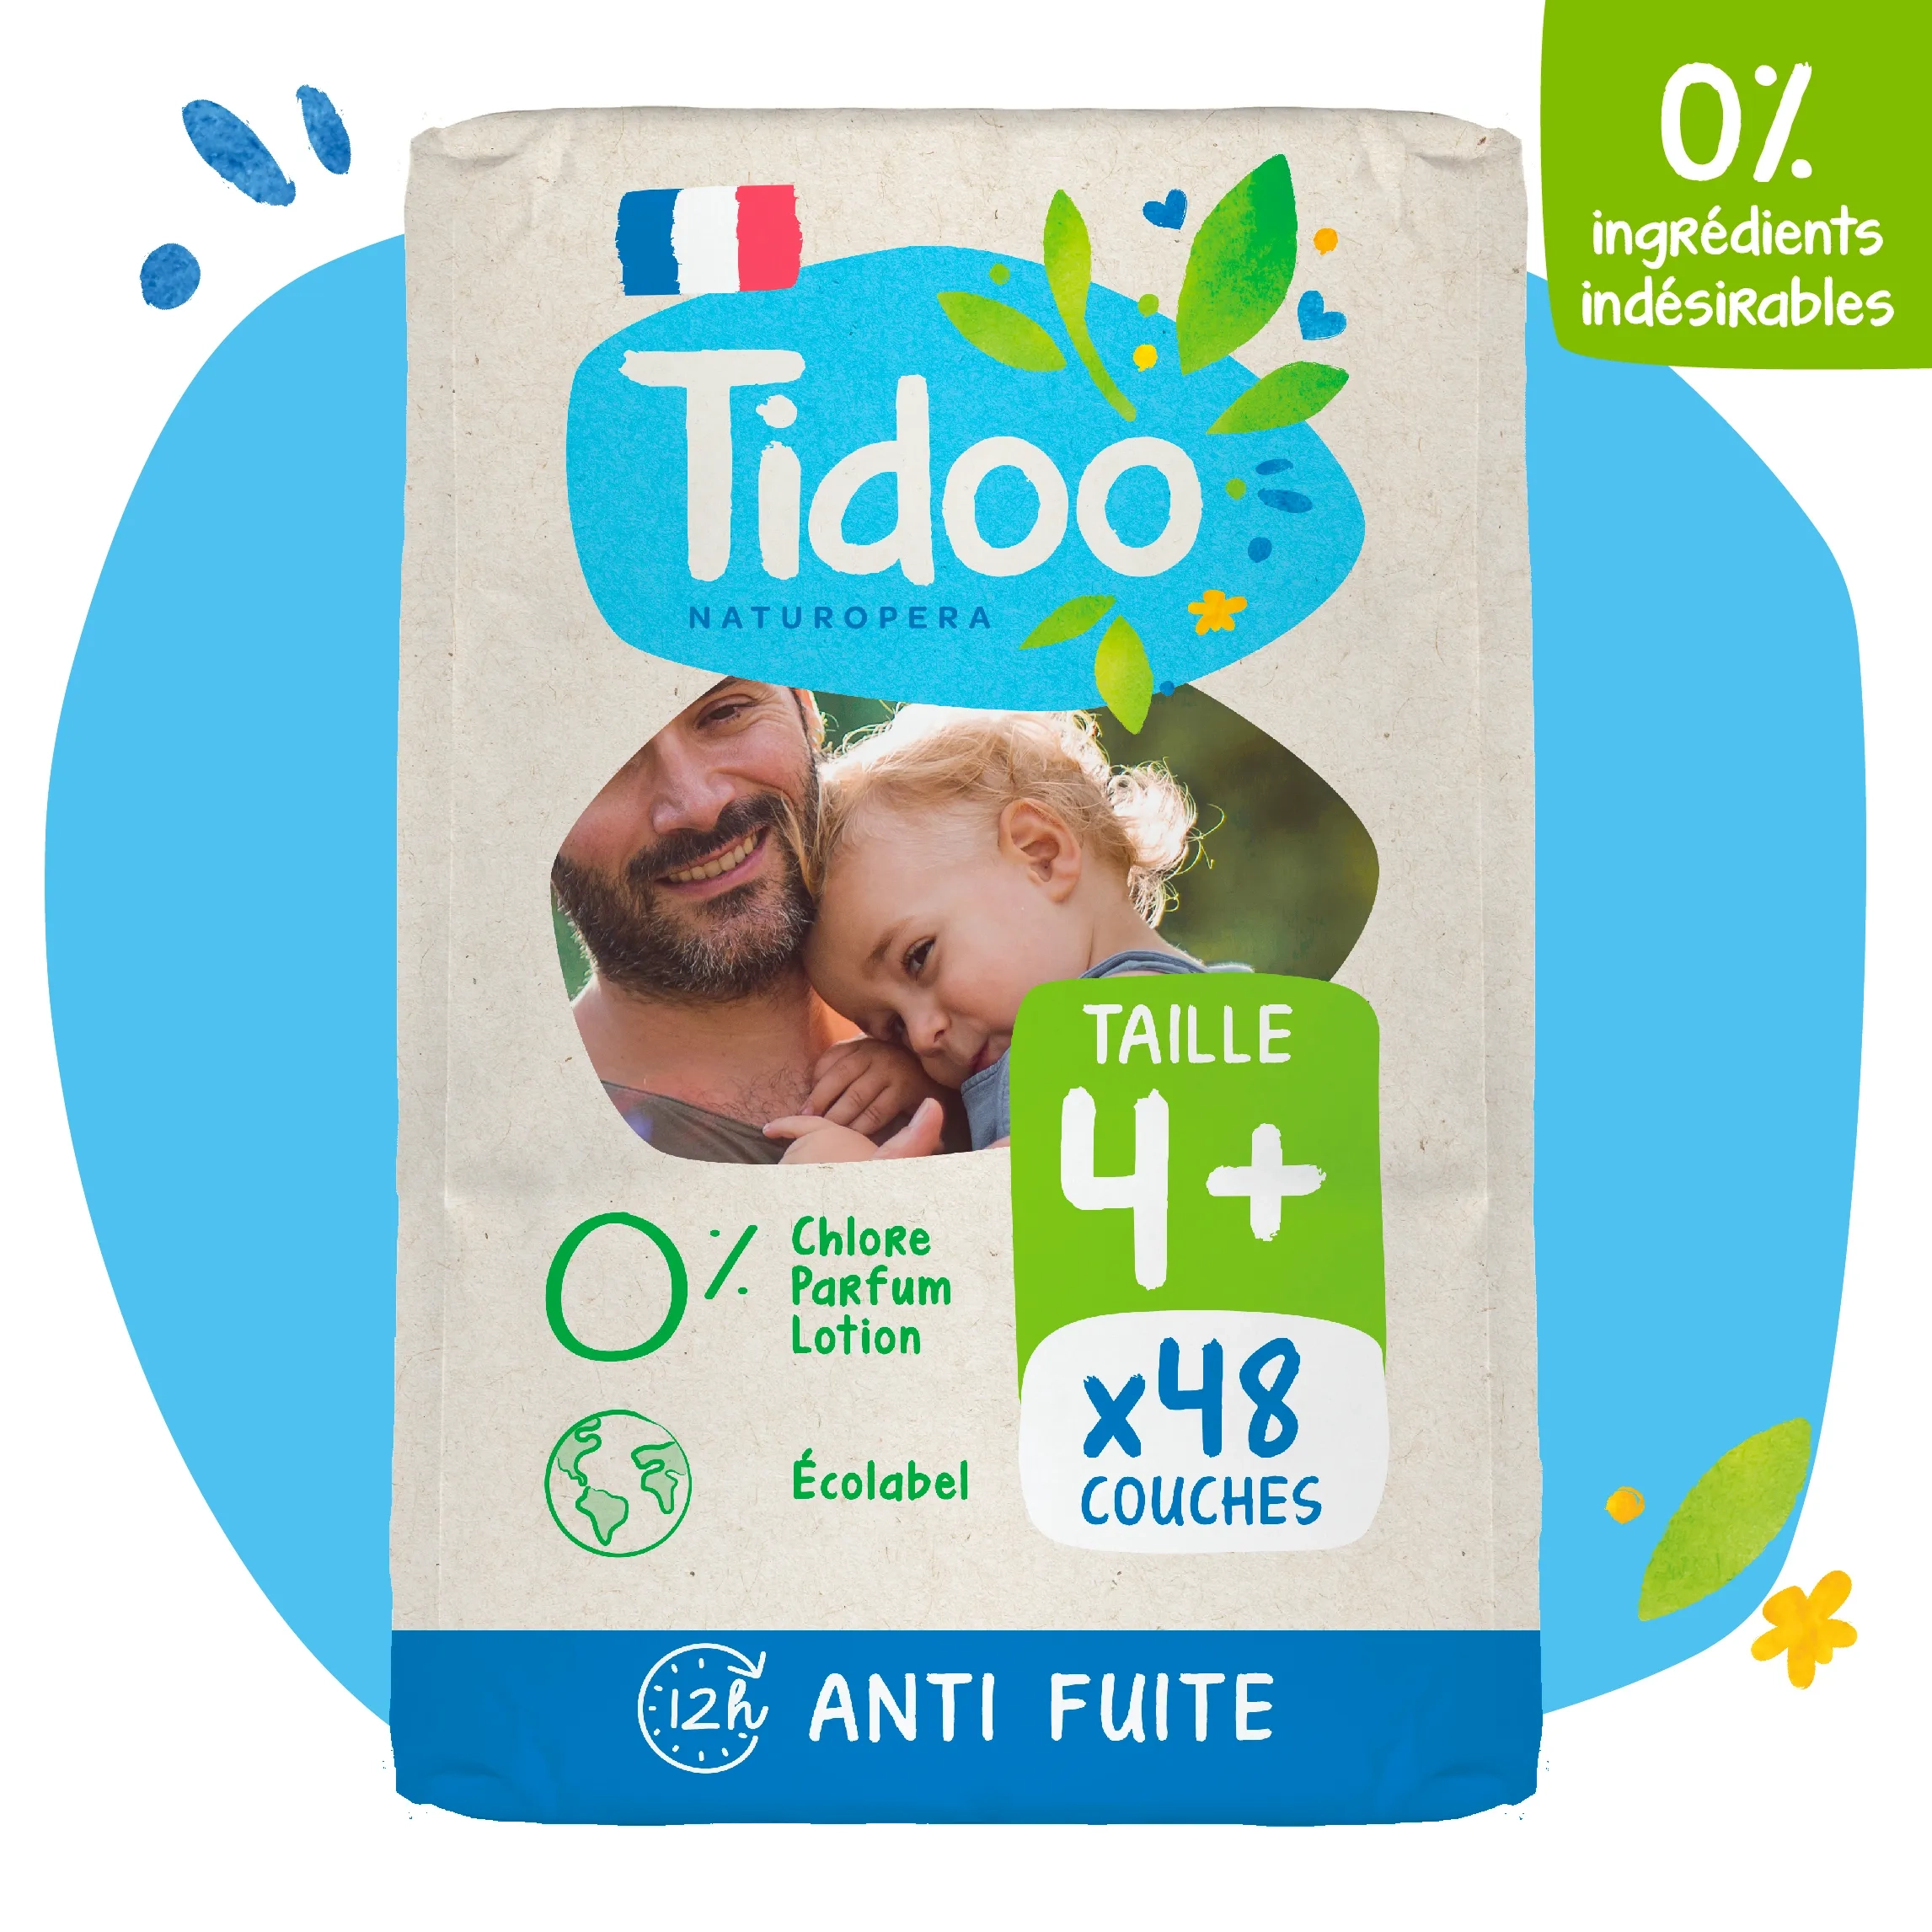 Graines de vie  Tidoo Jour et Nuit 3 - 4 à 9 kg